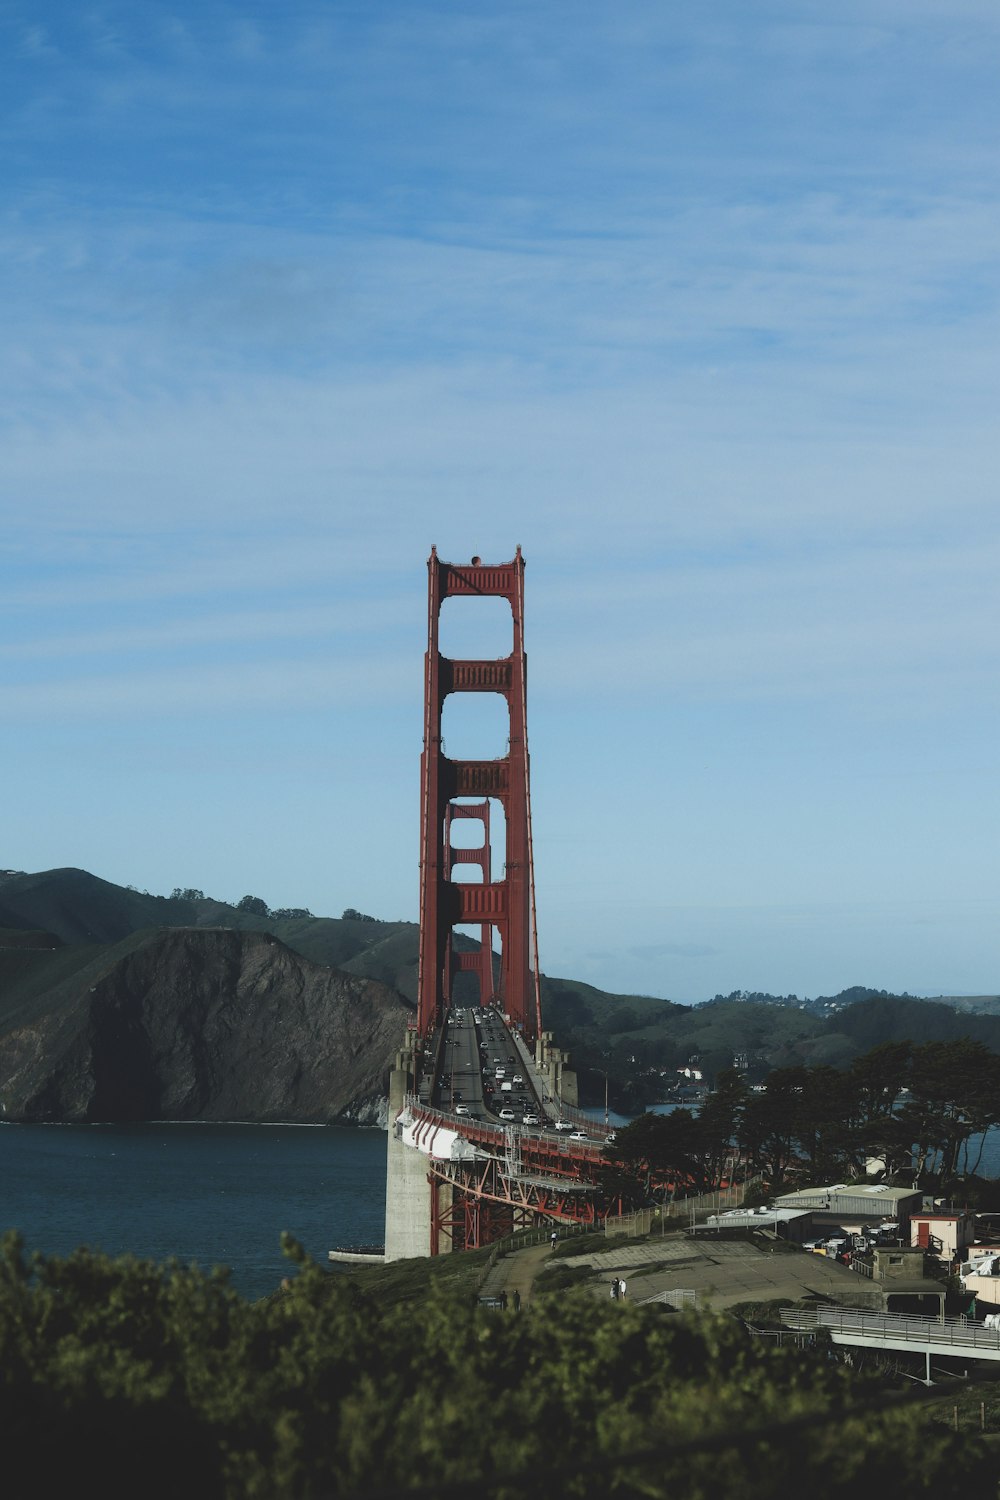 Une vue du Golden Gate Bridge de l’autre côté de la baie